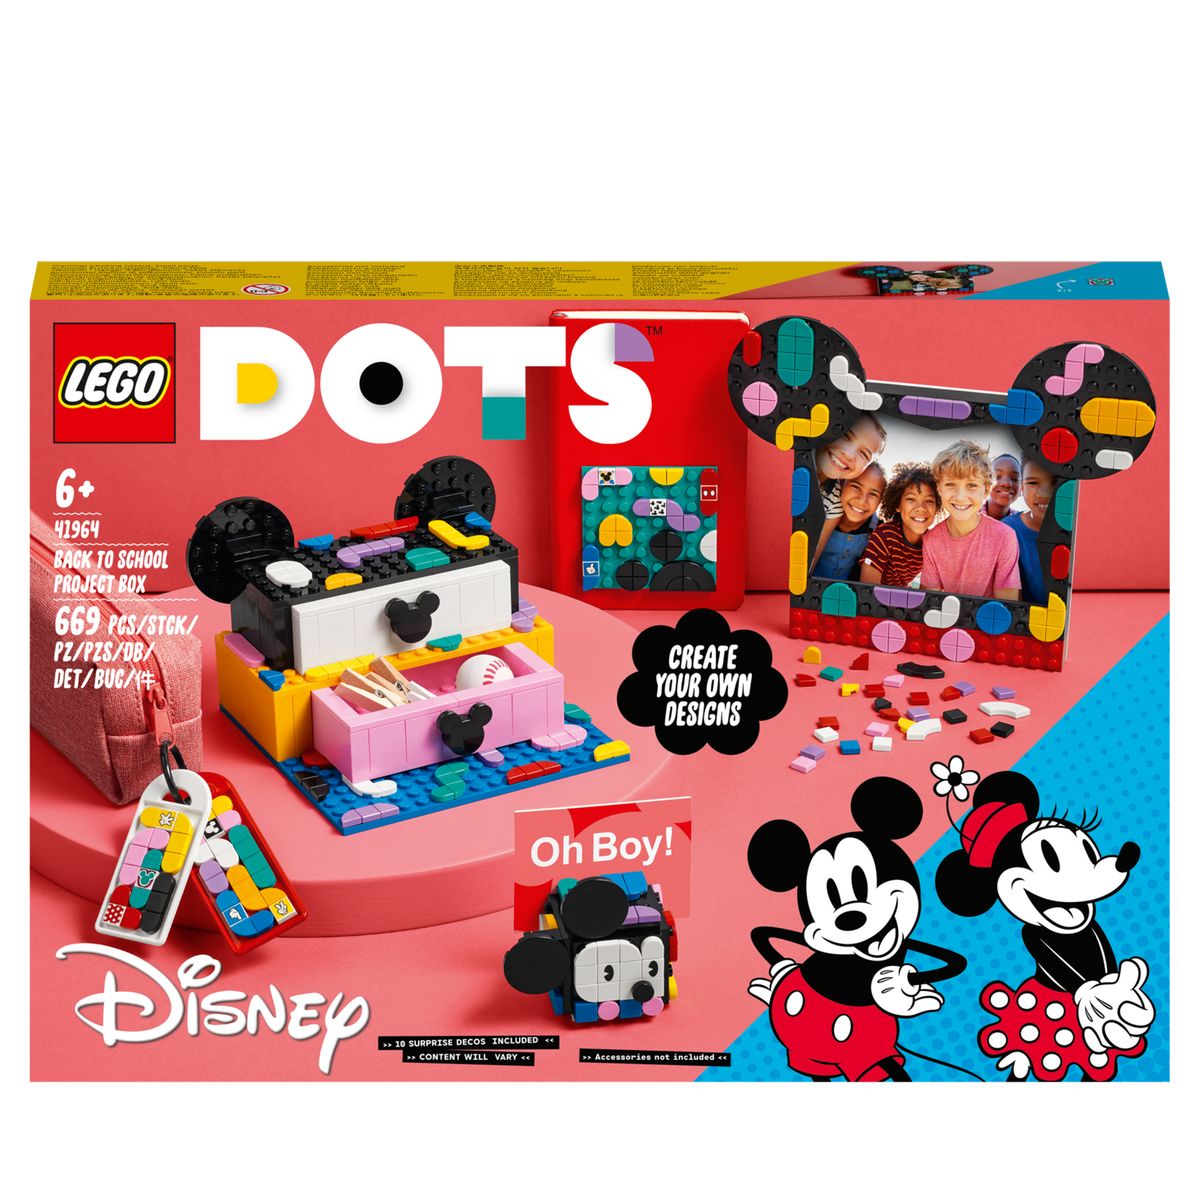 Boîte de rangement de puzzle jouet, boîte de classification de blocs de  construction, boîte d'emballage de jouet d'assemblage pour enfants